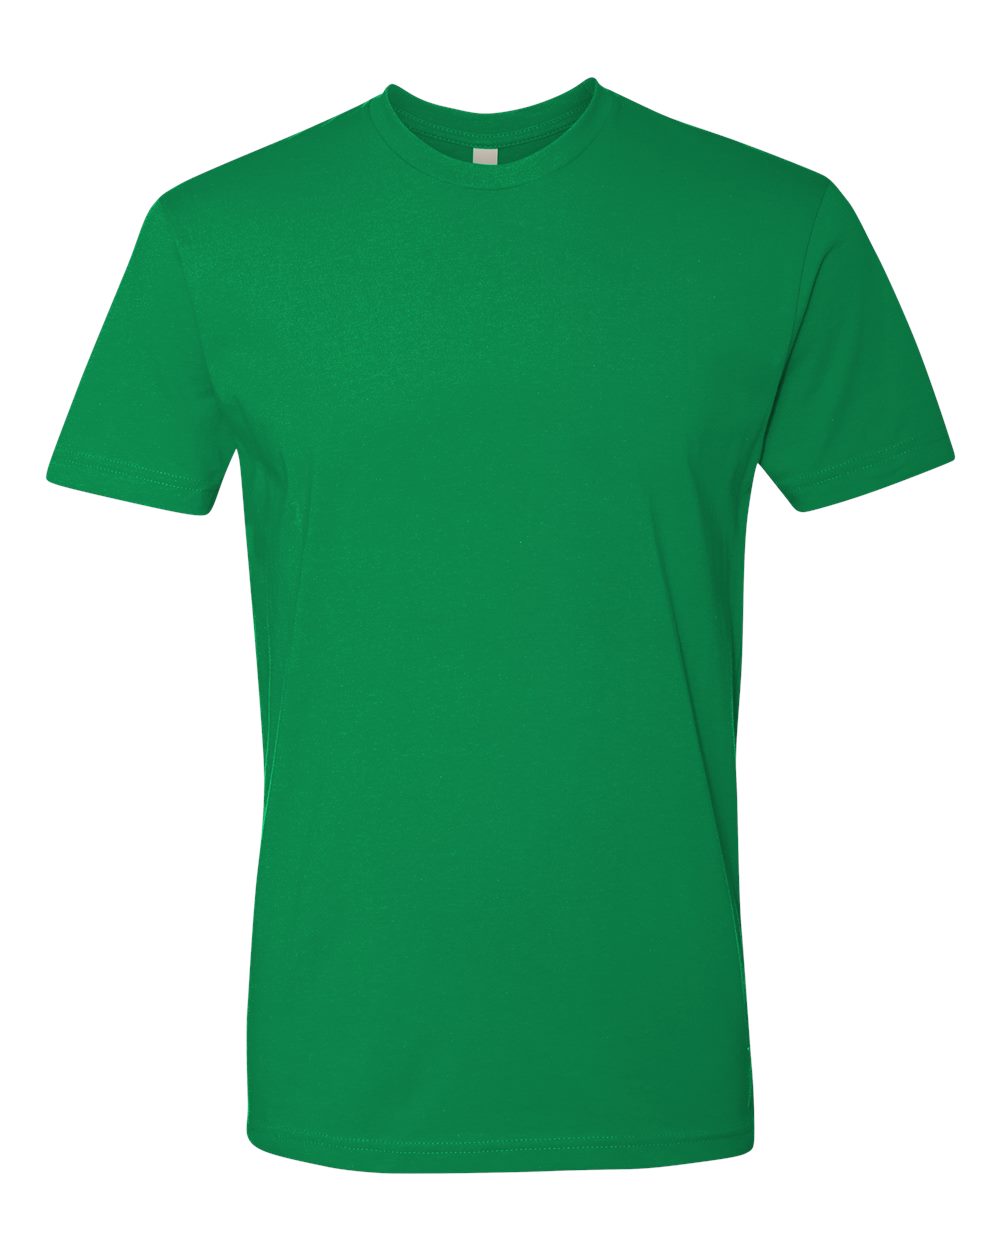 Next Level 3600 - Unisex Cotton T-Shirt $6.21 - T-Shirts